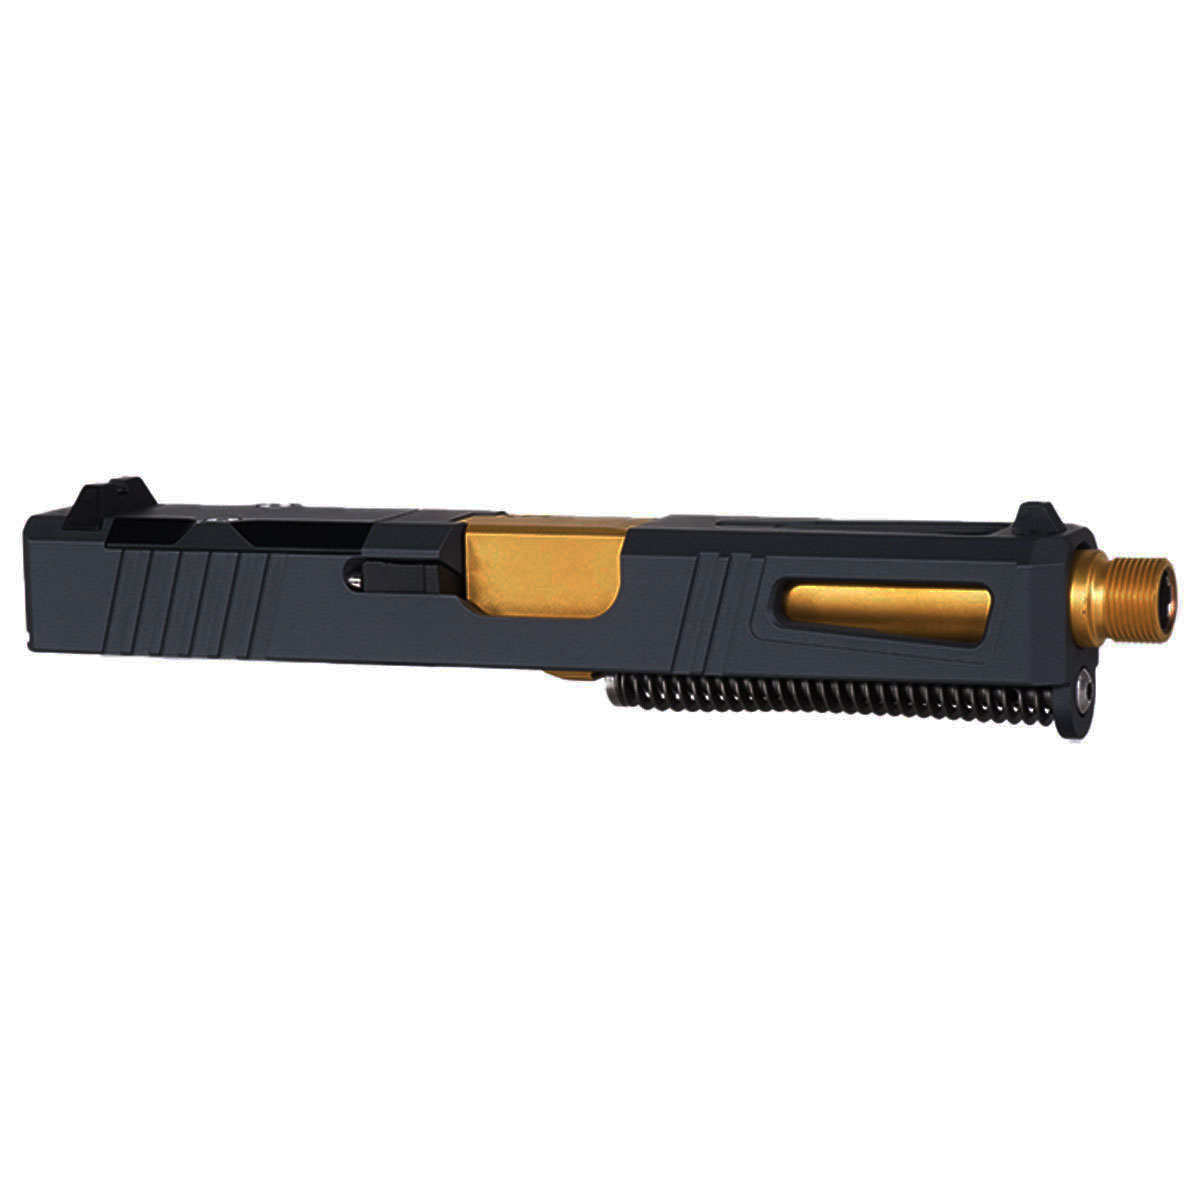 DD 'Hermes' 9mm Complete Slide Kit - Glock 19 Gen 1-3 Compatible